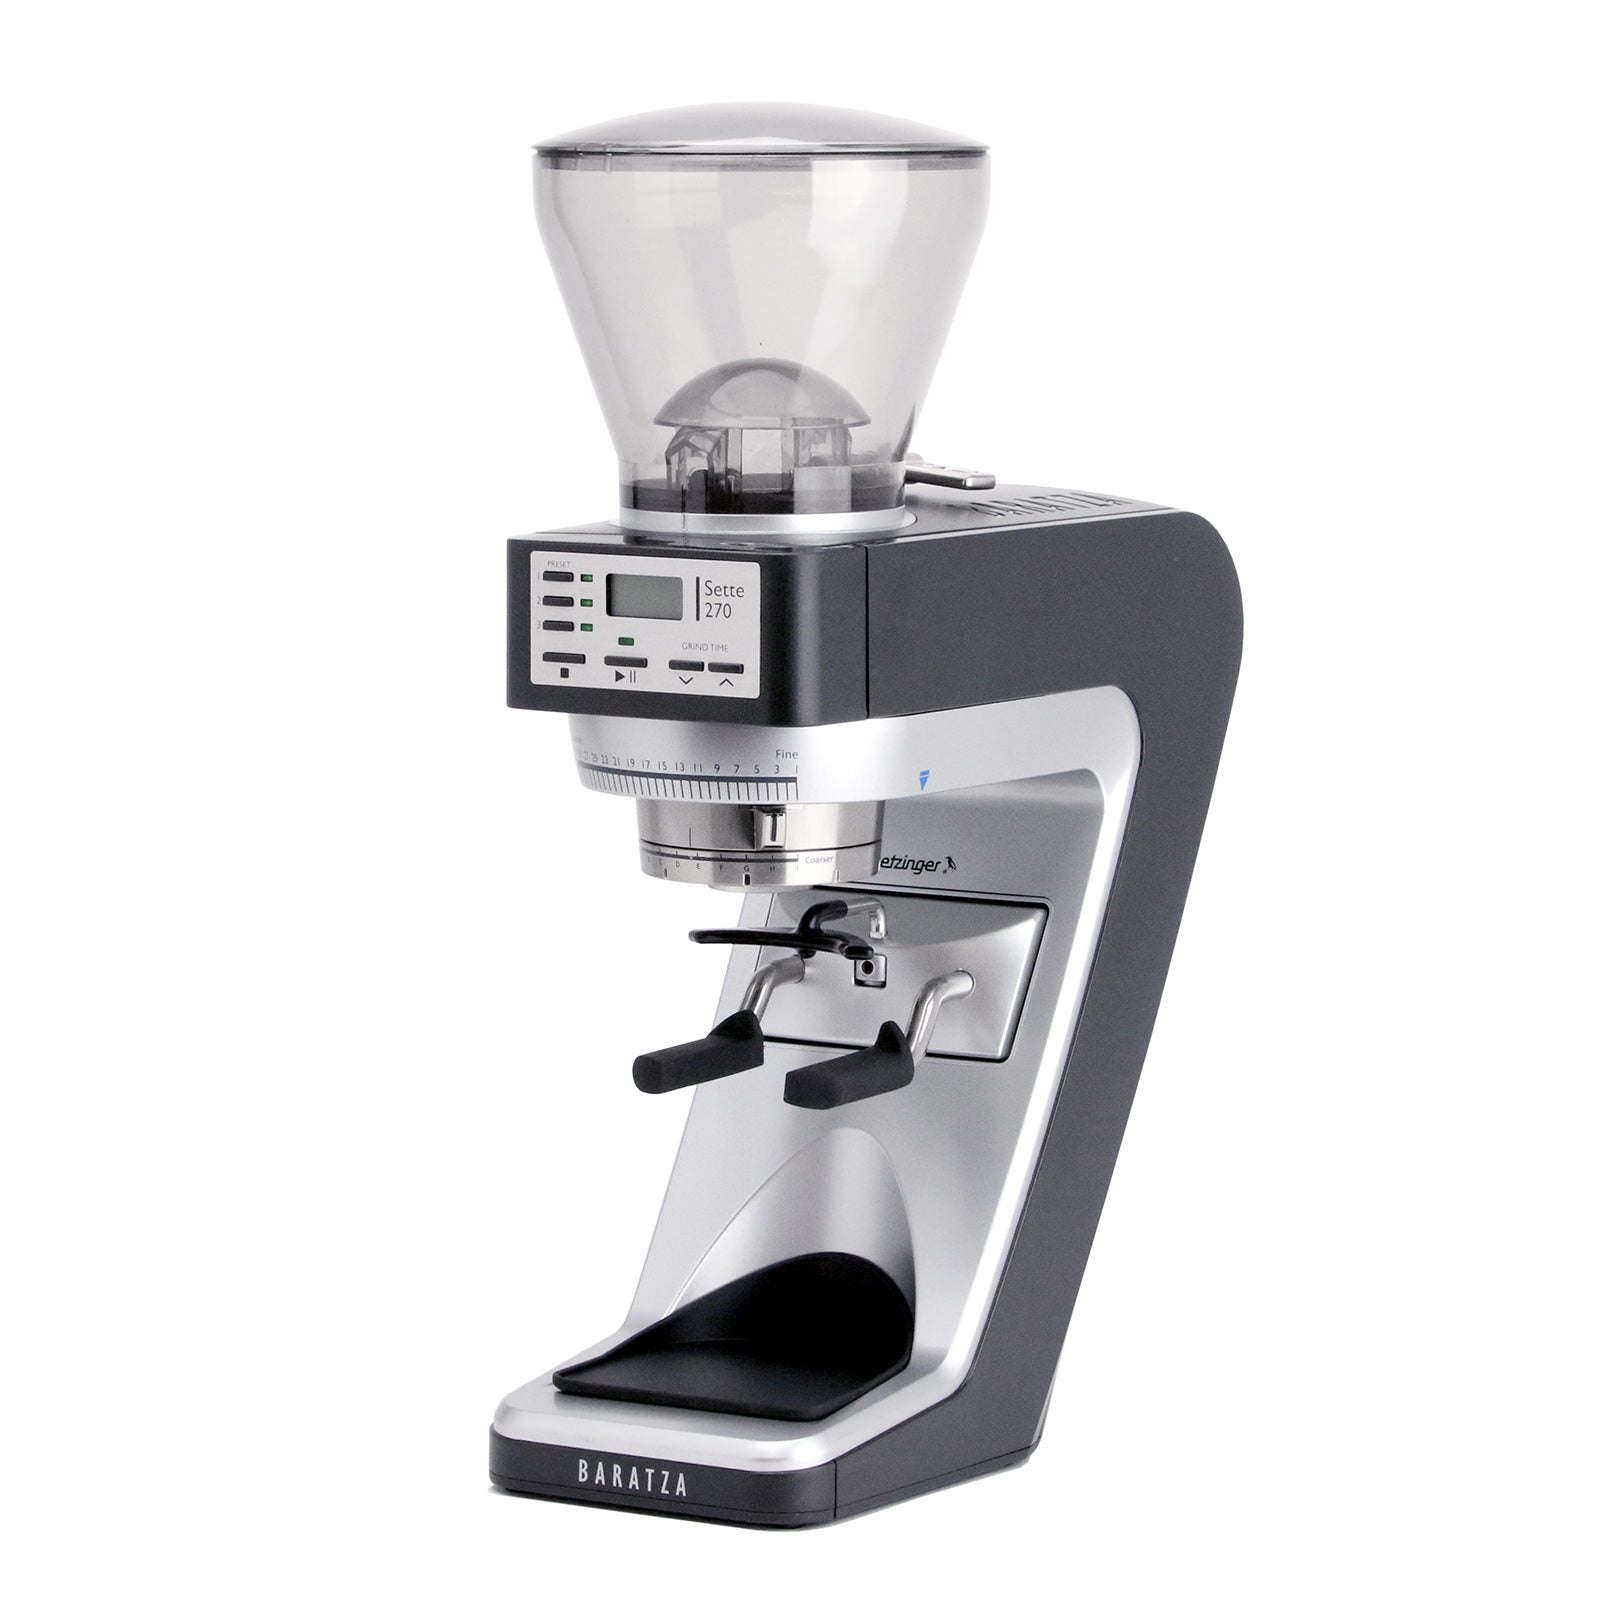 Desarrollar Agencia de viajes As Baratza Sette 270 Espresso Grinder – Clive Coffee